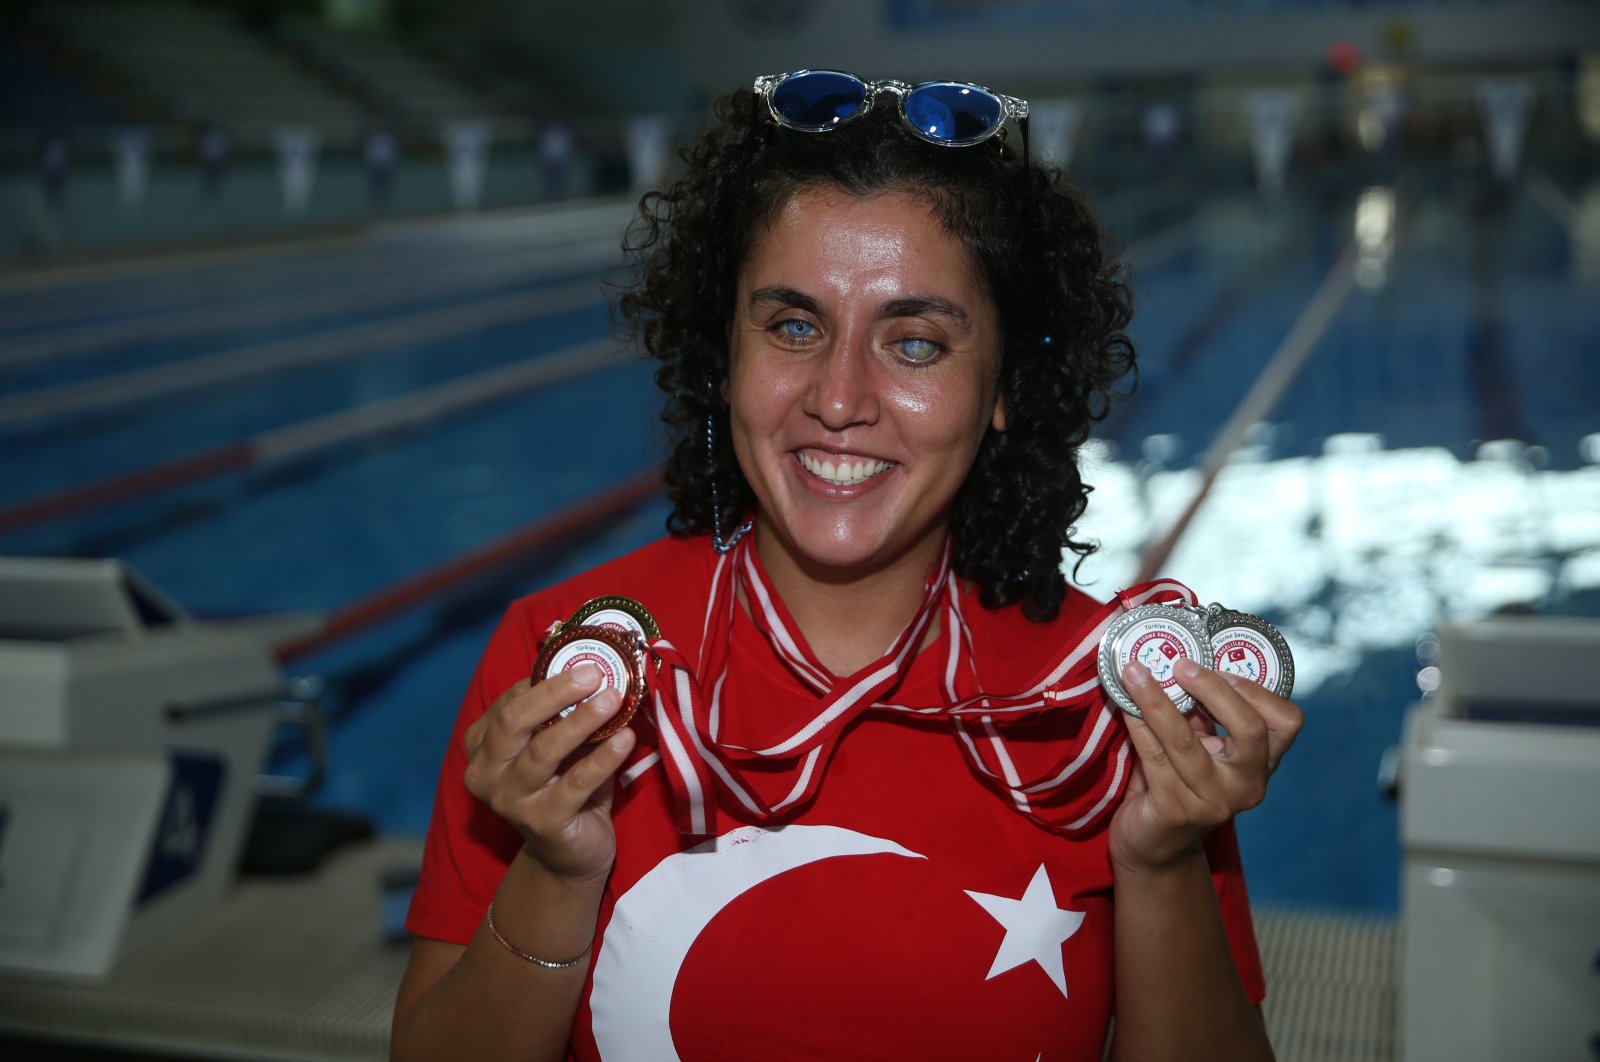 Görme engelli öğretmen, Türk bayrağını uluslararası alanda dalgalandırmayı hedefliyor